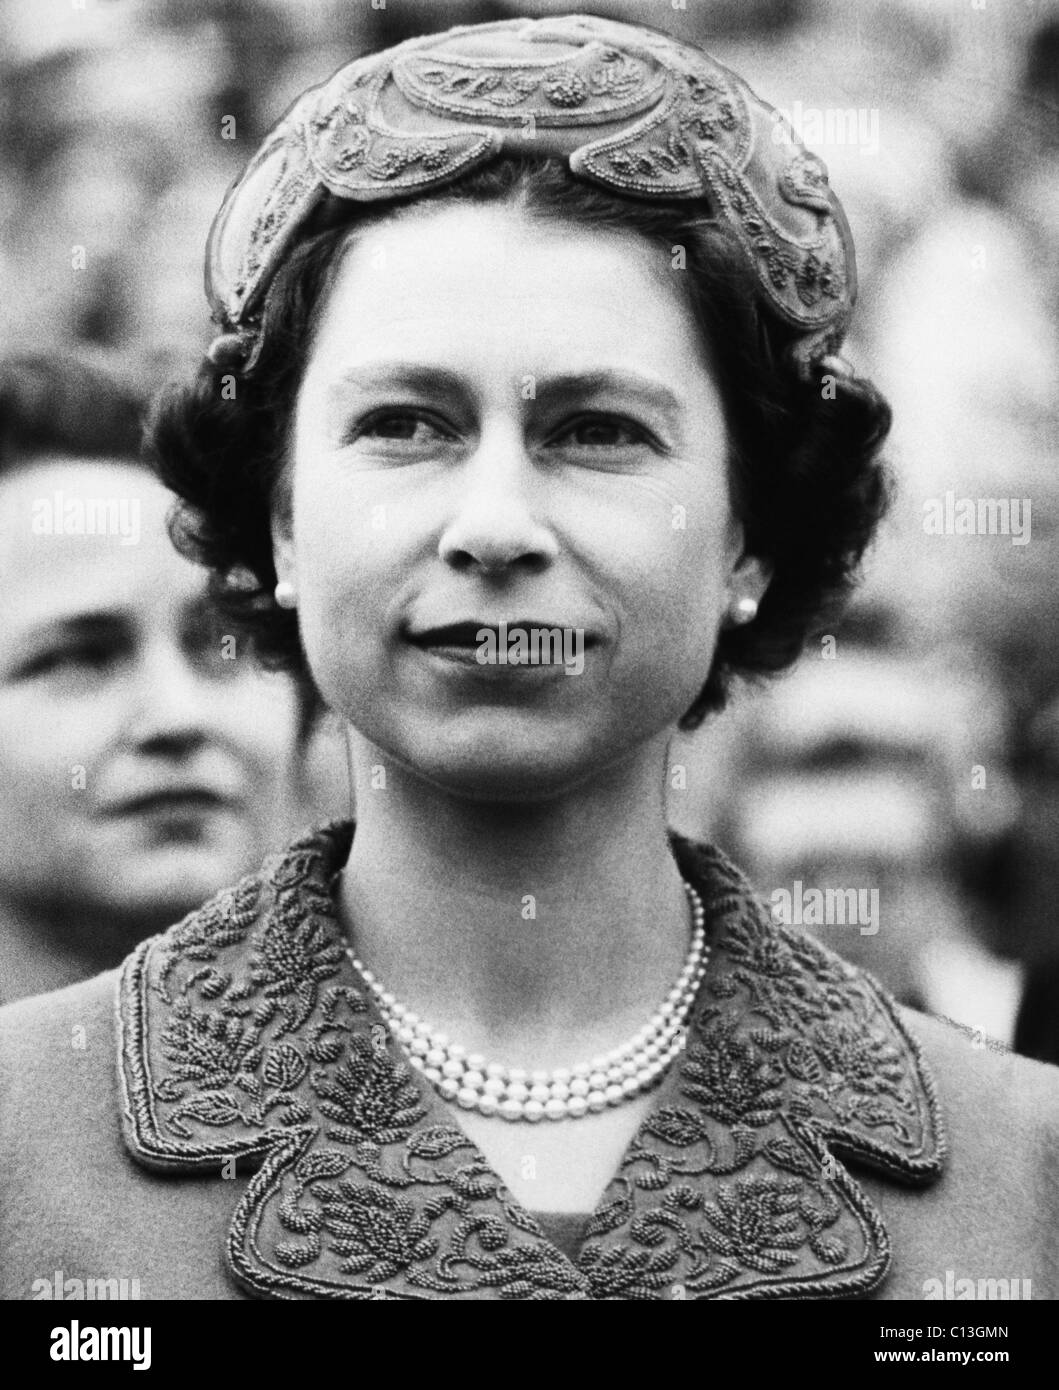 British royalty. La regina Elisabetta II di Inghilterra, risalente alla fine degli anni cinquanta. Foto Stock